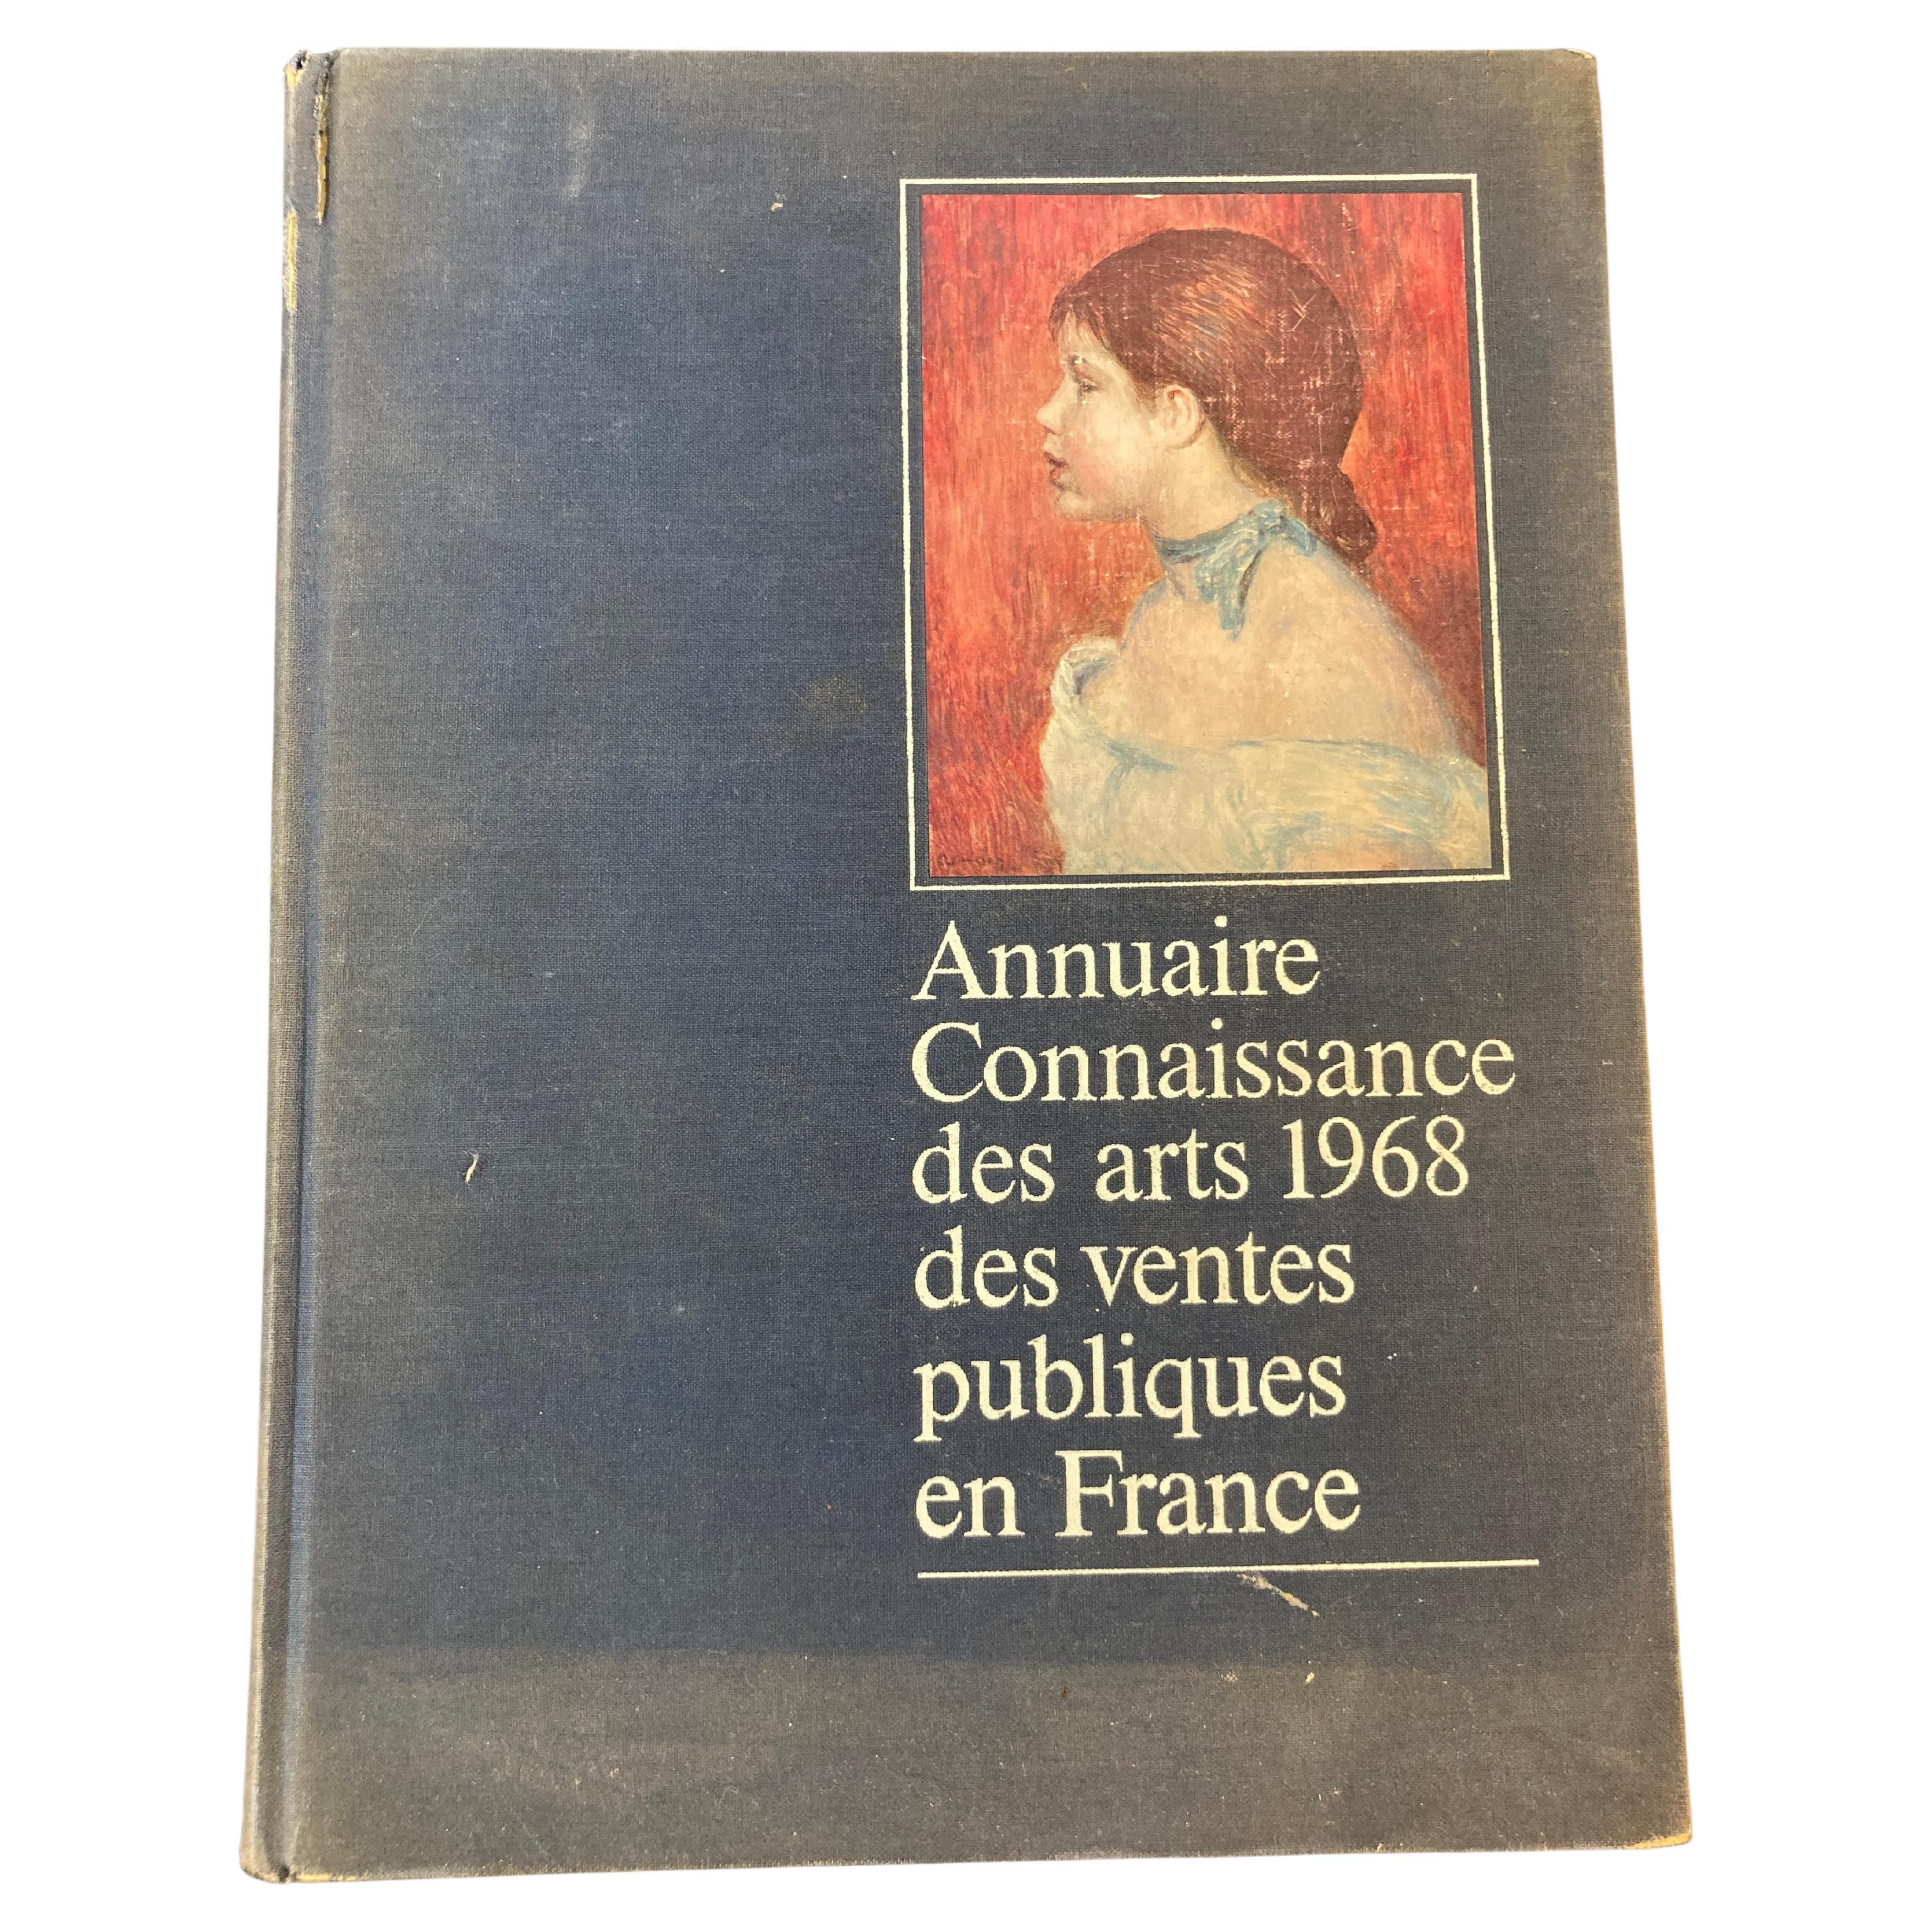 Annuaire connaissance des arts 1968 des ventes publiques en France Hardcover For Sale